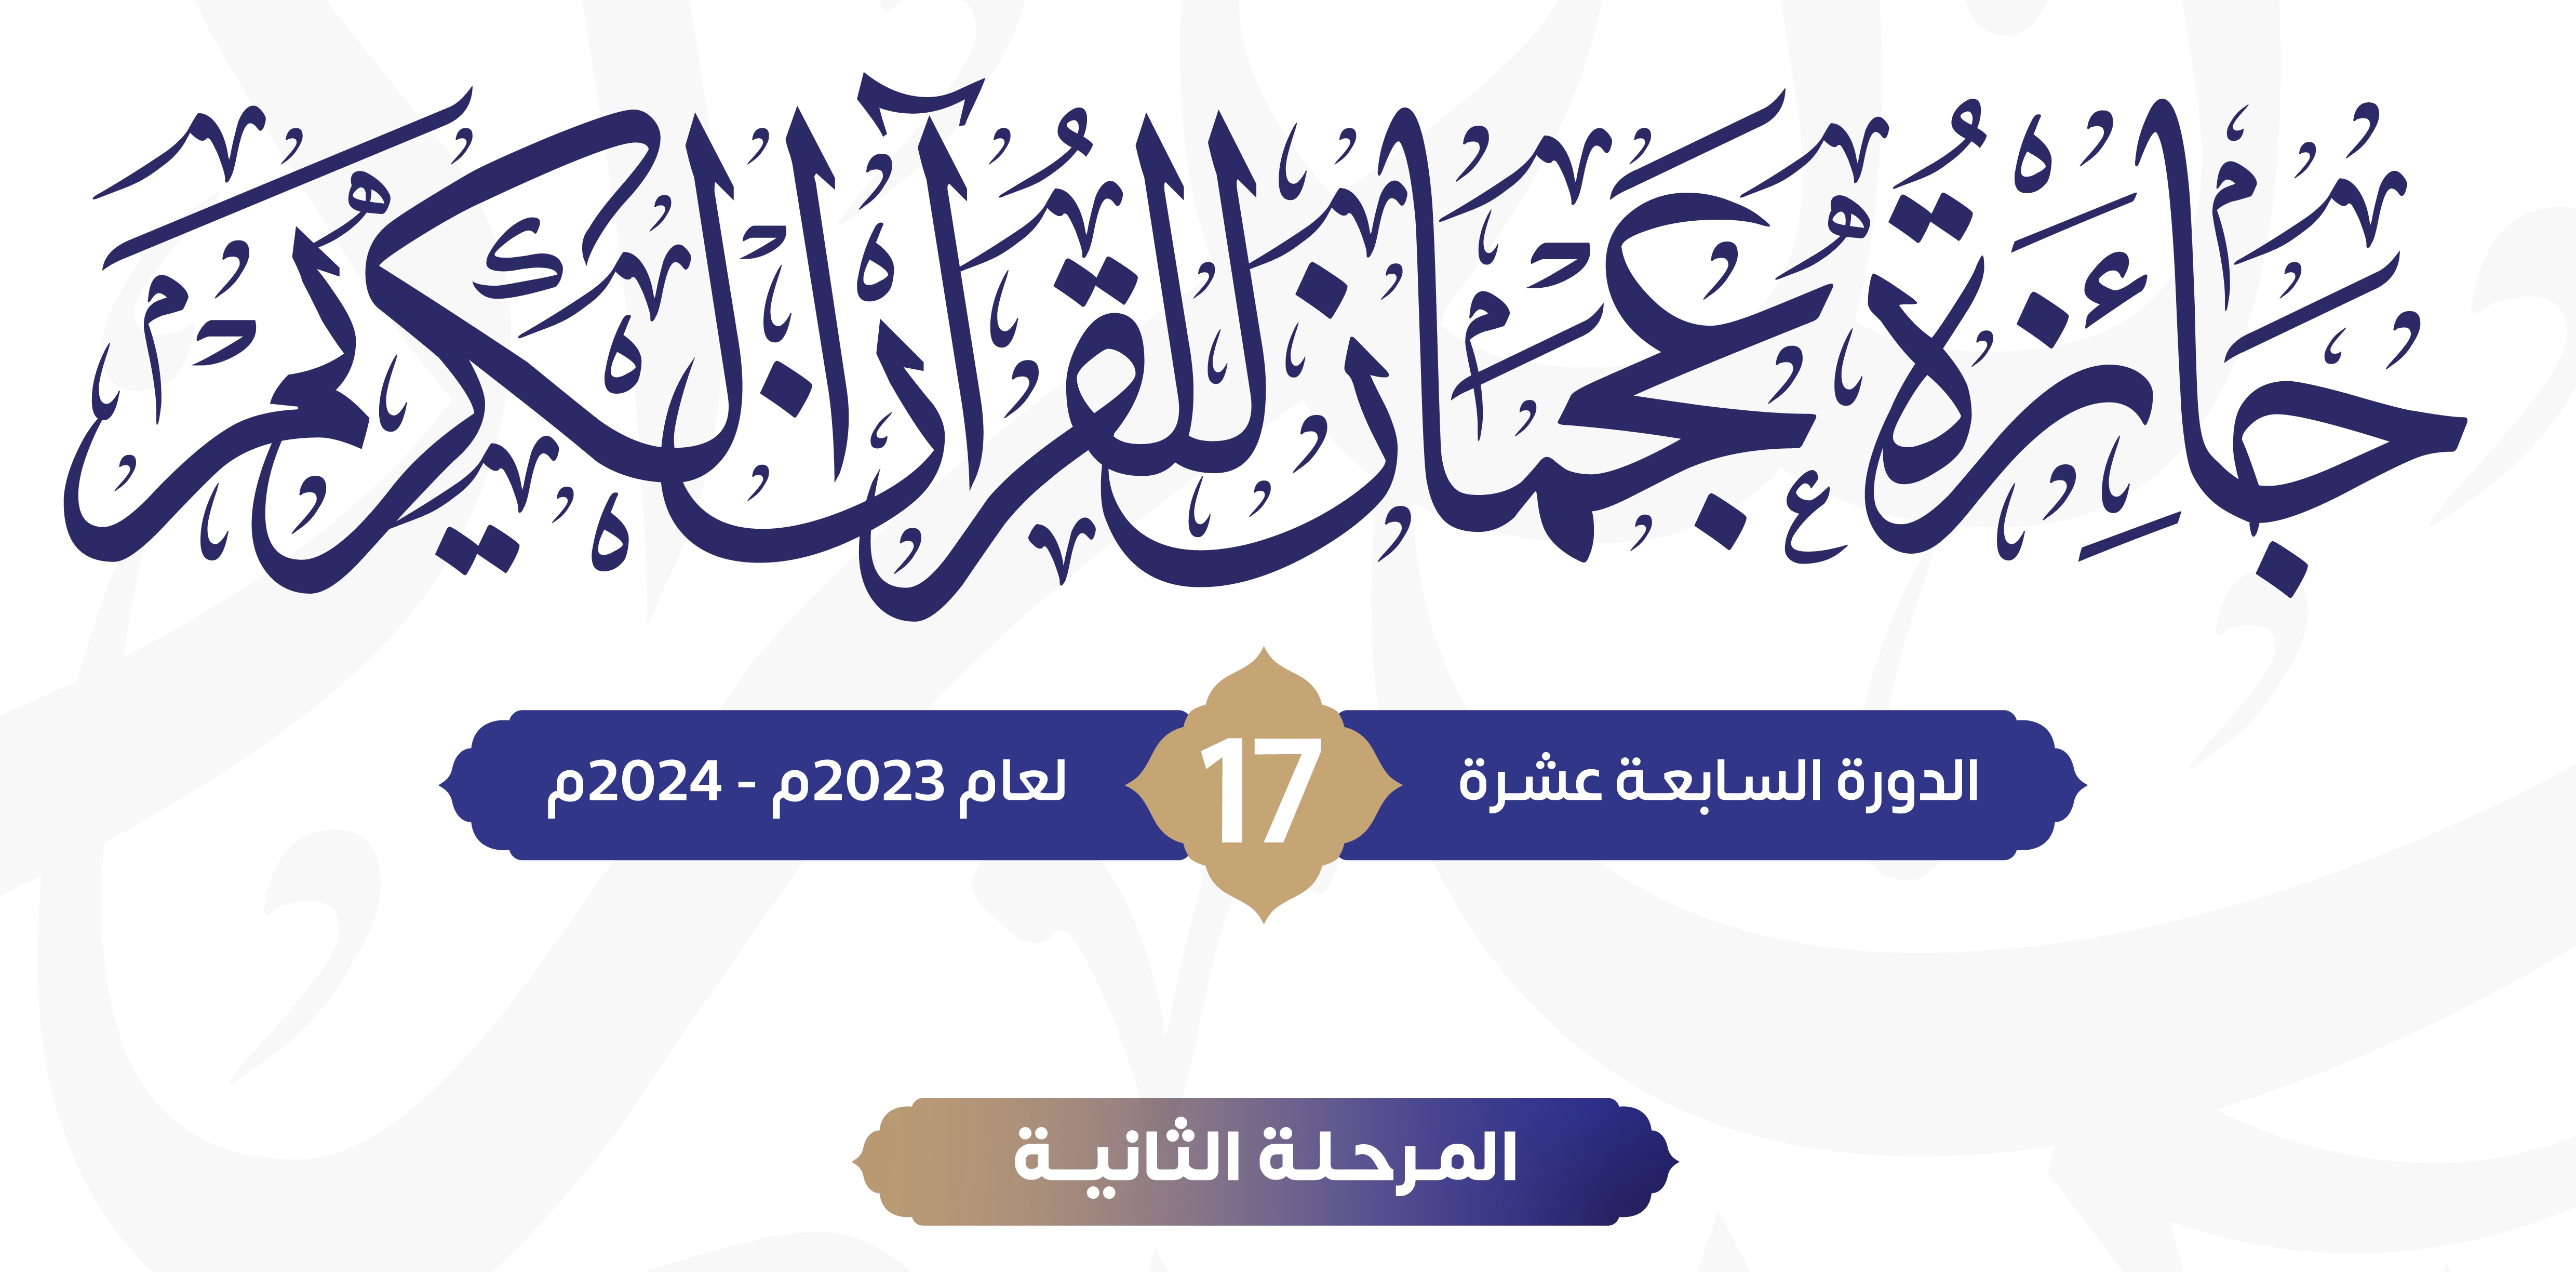 مركز حميد بن راشد لخدمة القرآن يطلق المرحلة الثانية من جائرة عجمان للقرآن الكريم